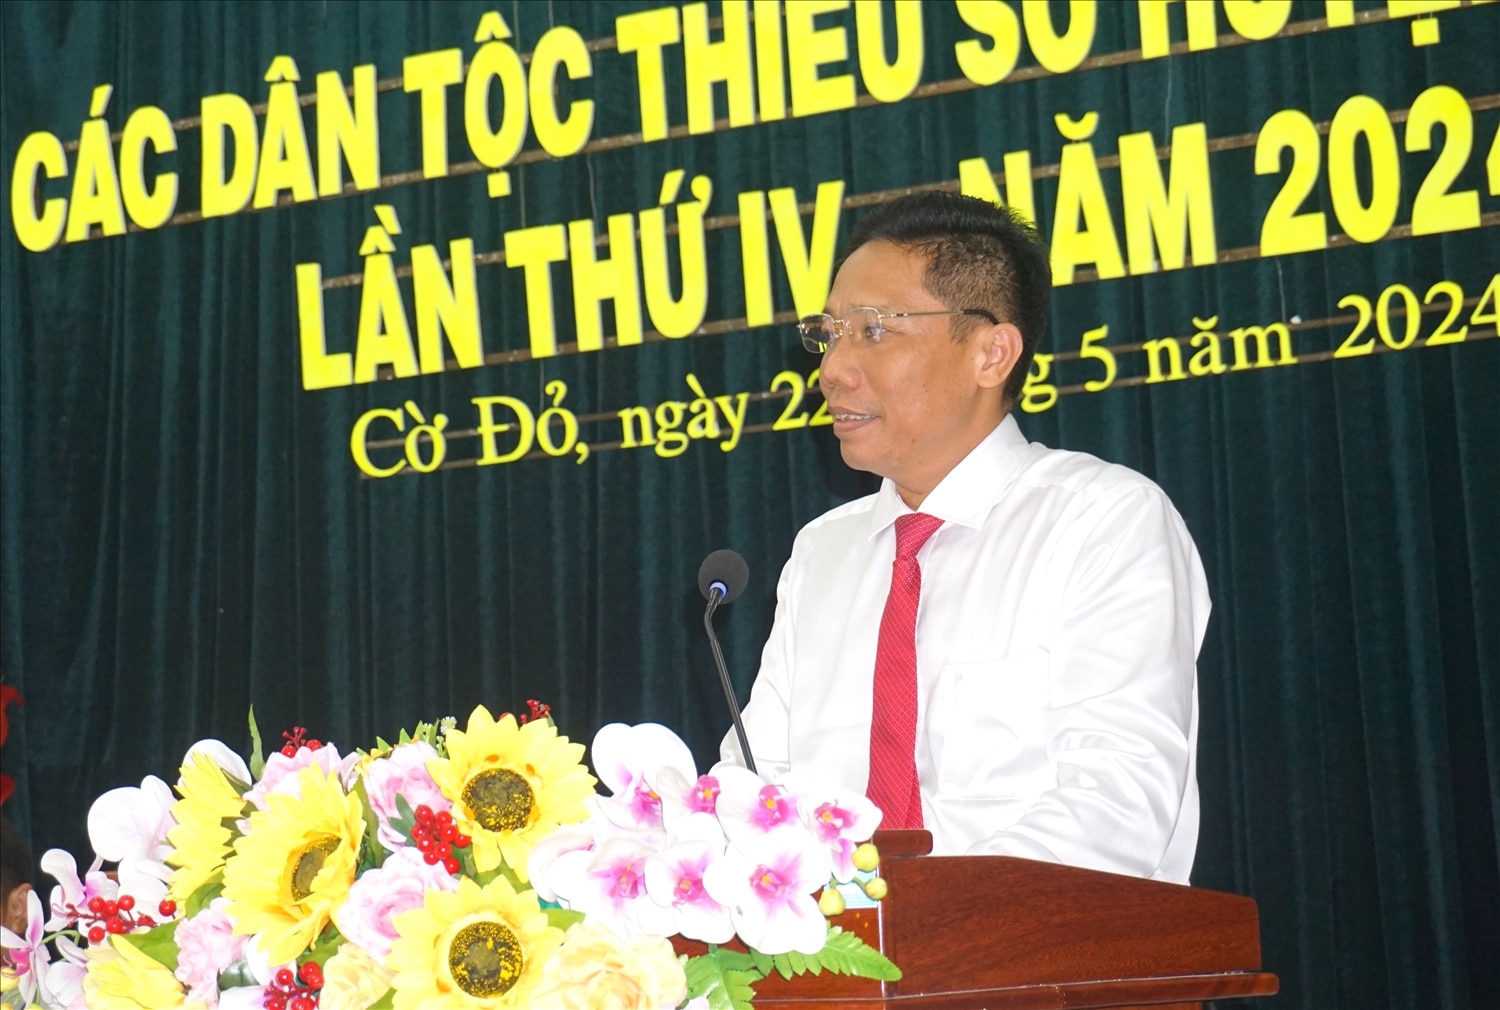 Ông Nguyễn Thực Hiện - Phó Chủ tịch UBND, Trưởng Ban chỉ đạo Đại hội đại biểu các DTTS TP. Cần Thơ lần thứ IV, năm 2024 phát biểu tại Đại hội